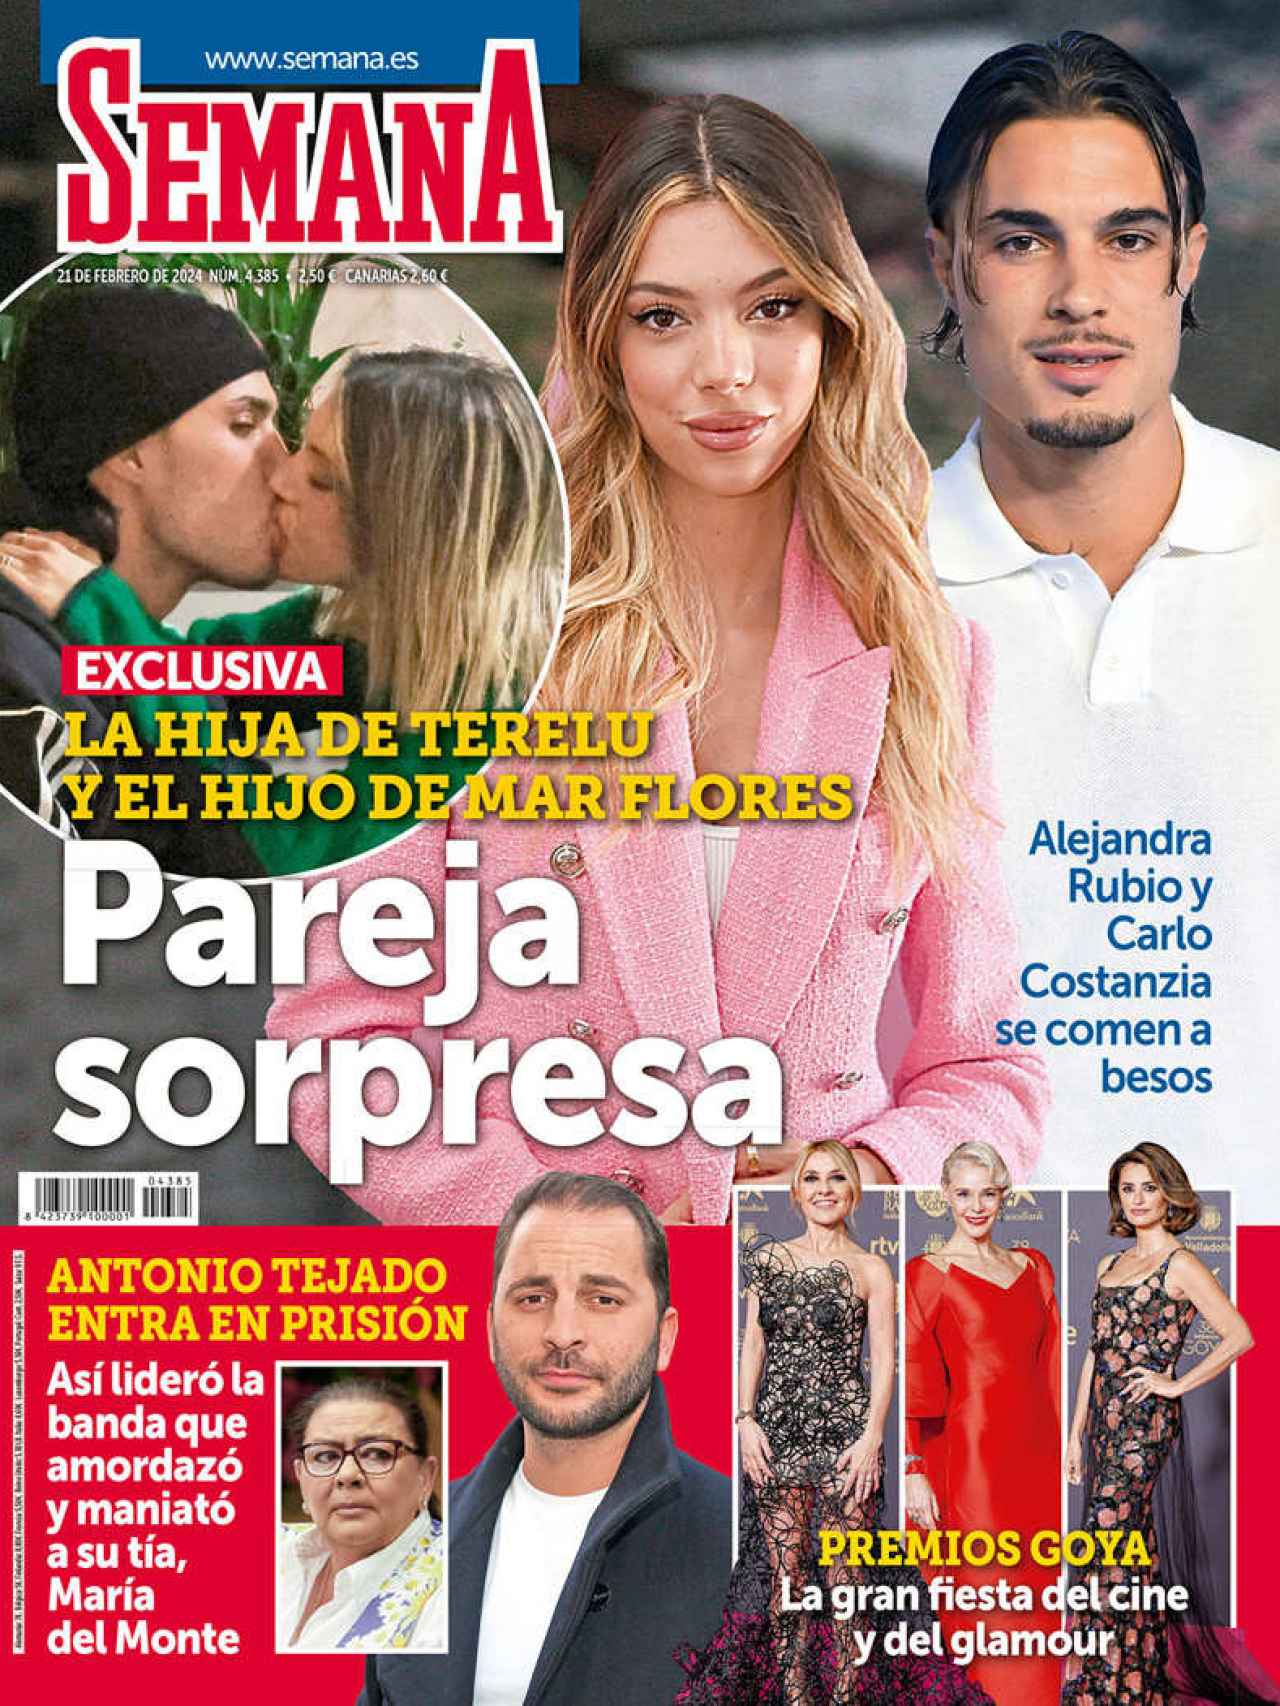 Portada de la revista 'Semana' protagonizada por Alejandra Rubio y Carlo Costanzia.